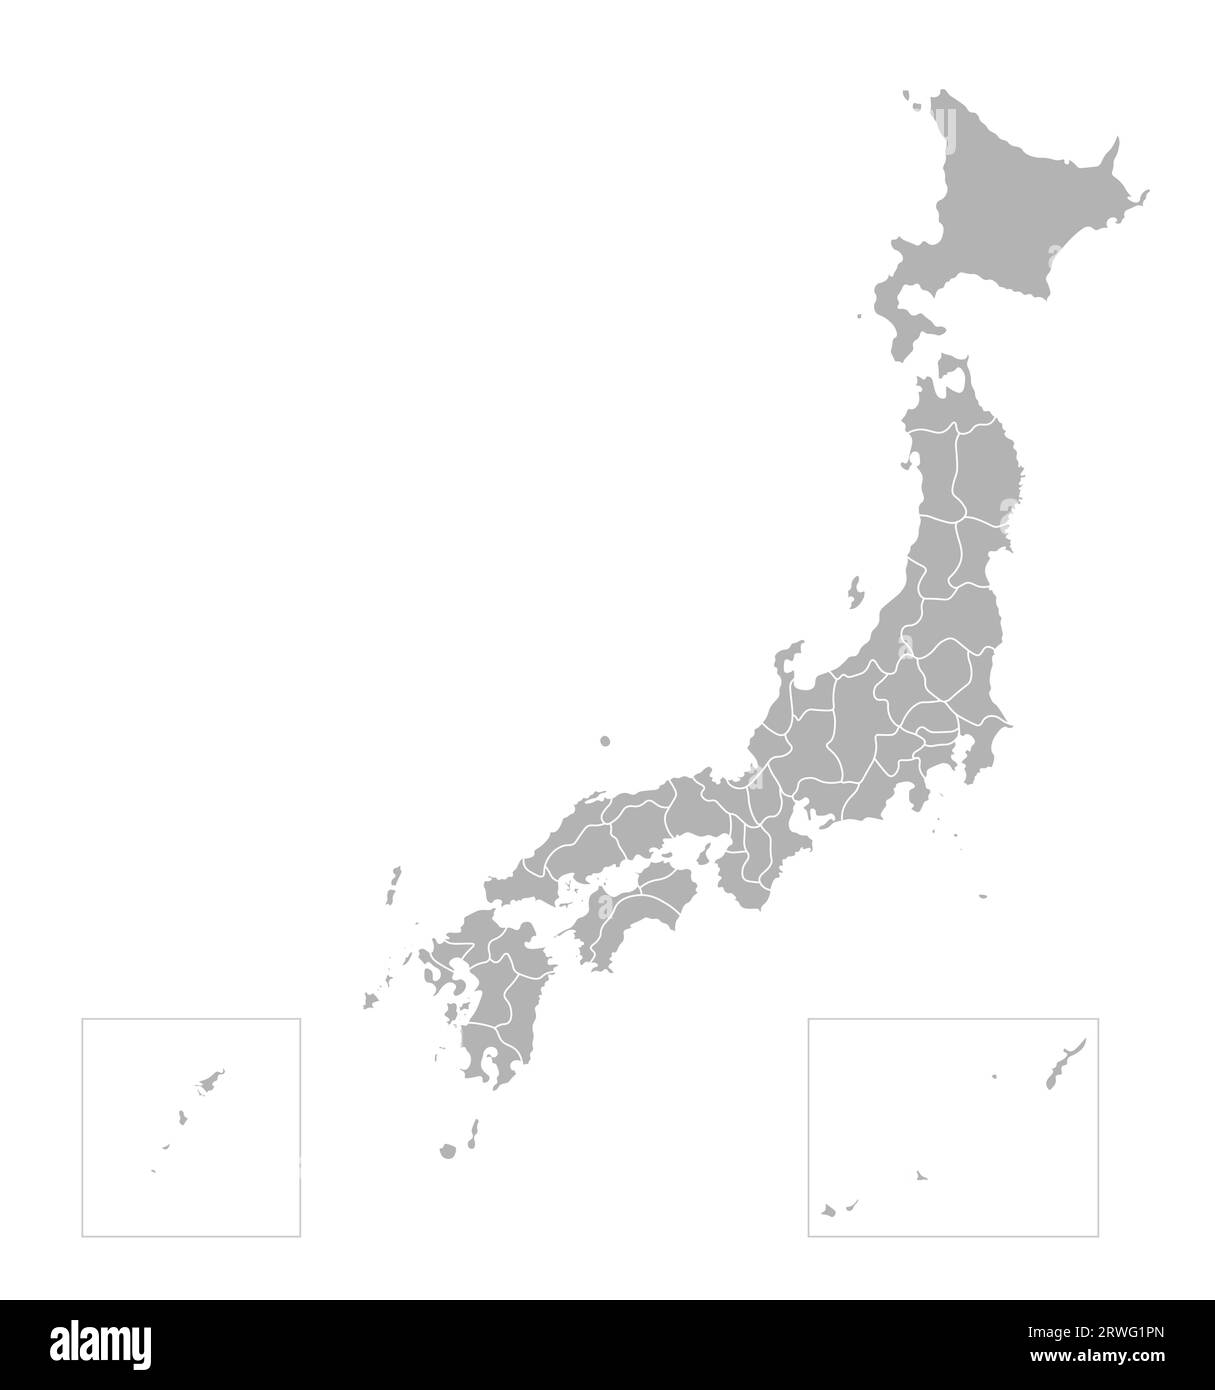 Vektorisolierte Darstellung einer vereinfachten Verwaltungskarte Japans. Grenzen der Präfekturen (Regionen). Graue Silhouetten. Weiße Umrandung. Stock Vektor